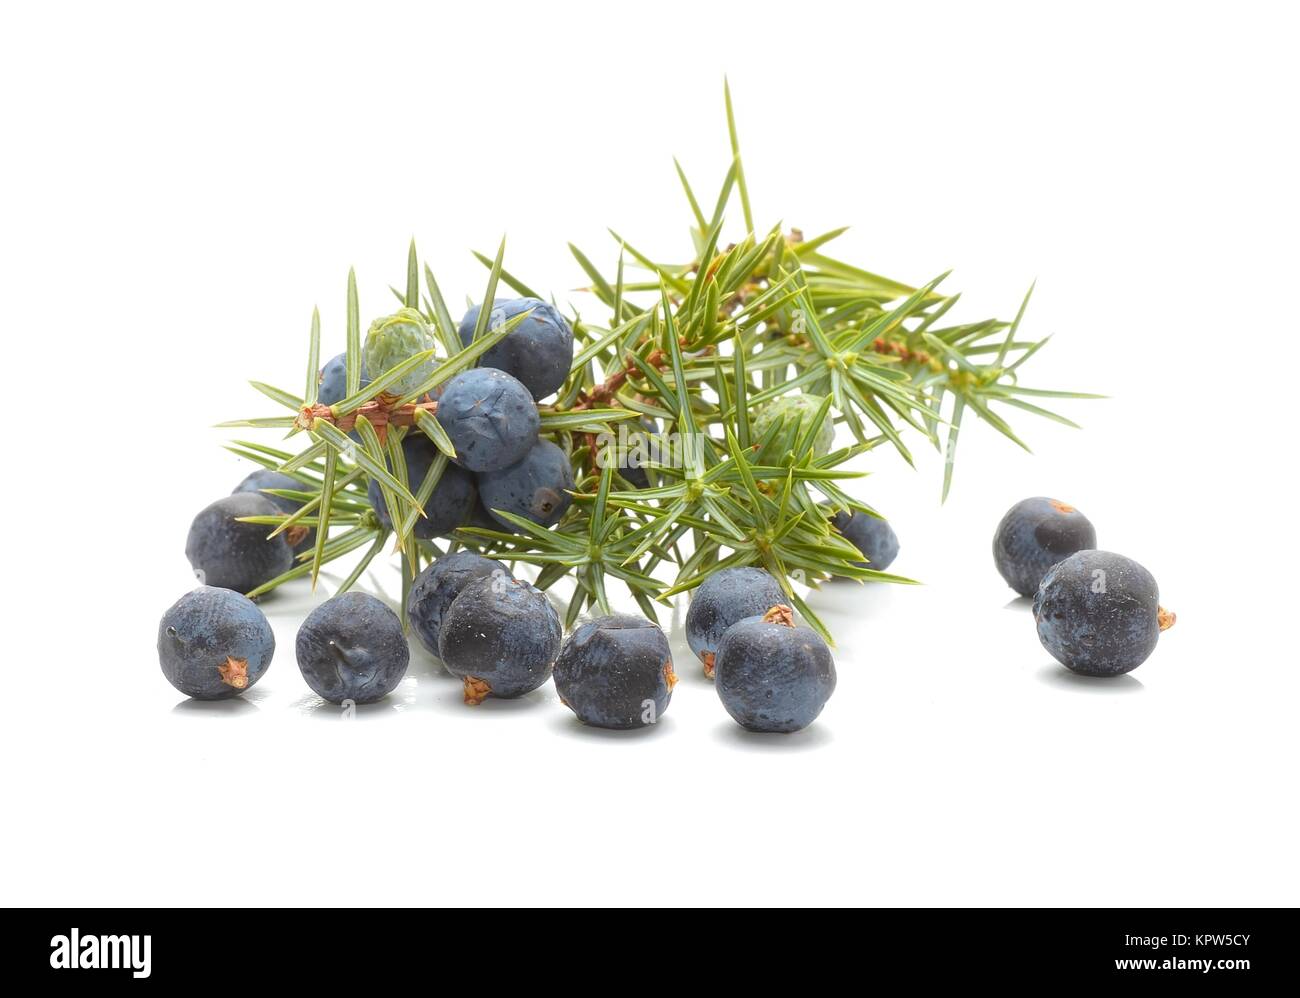 Common Juniper (Juniperus communis) fruits Stock Photo